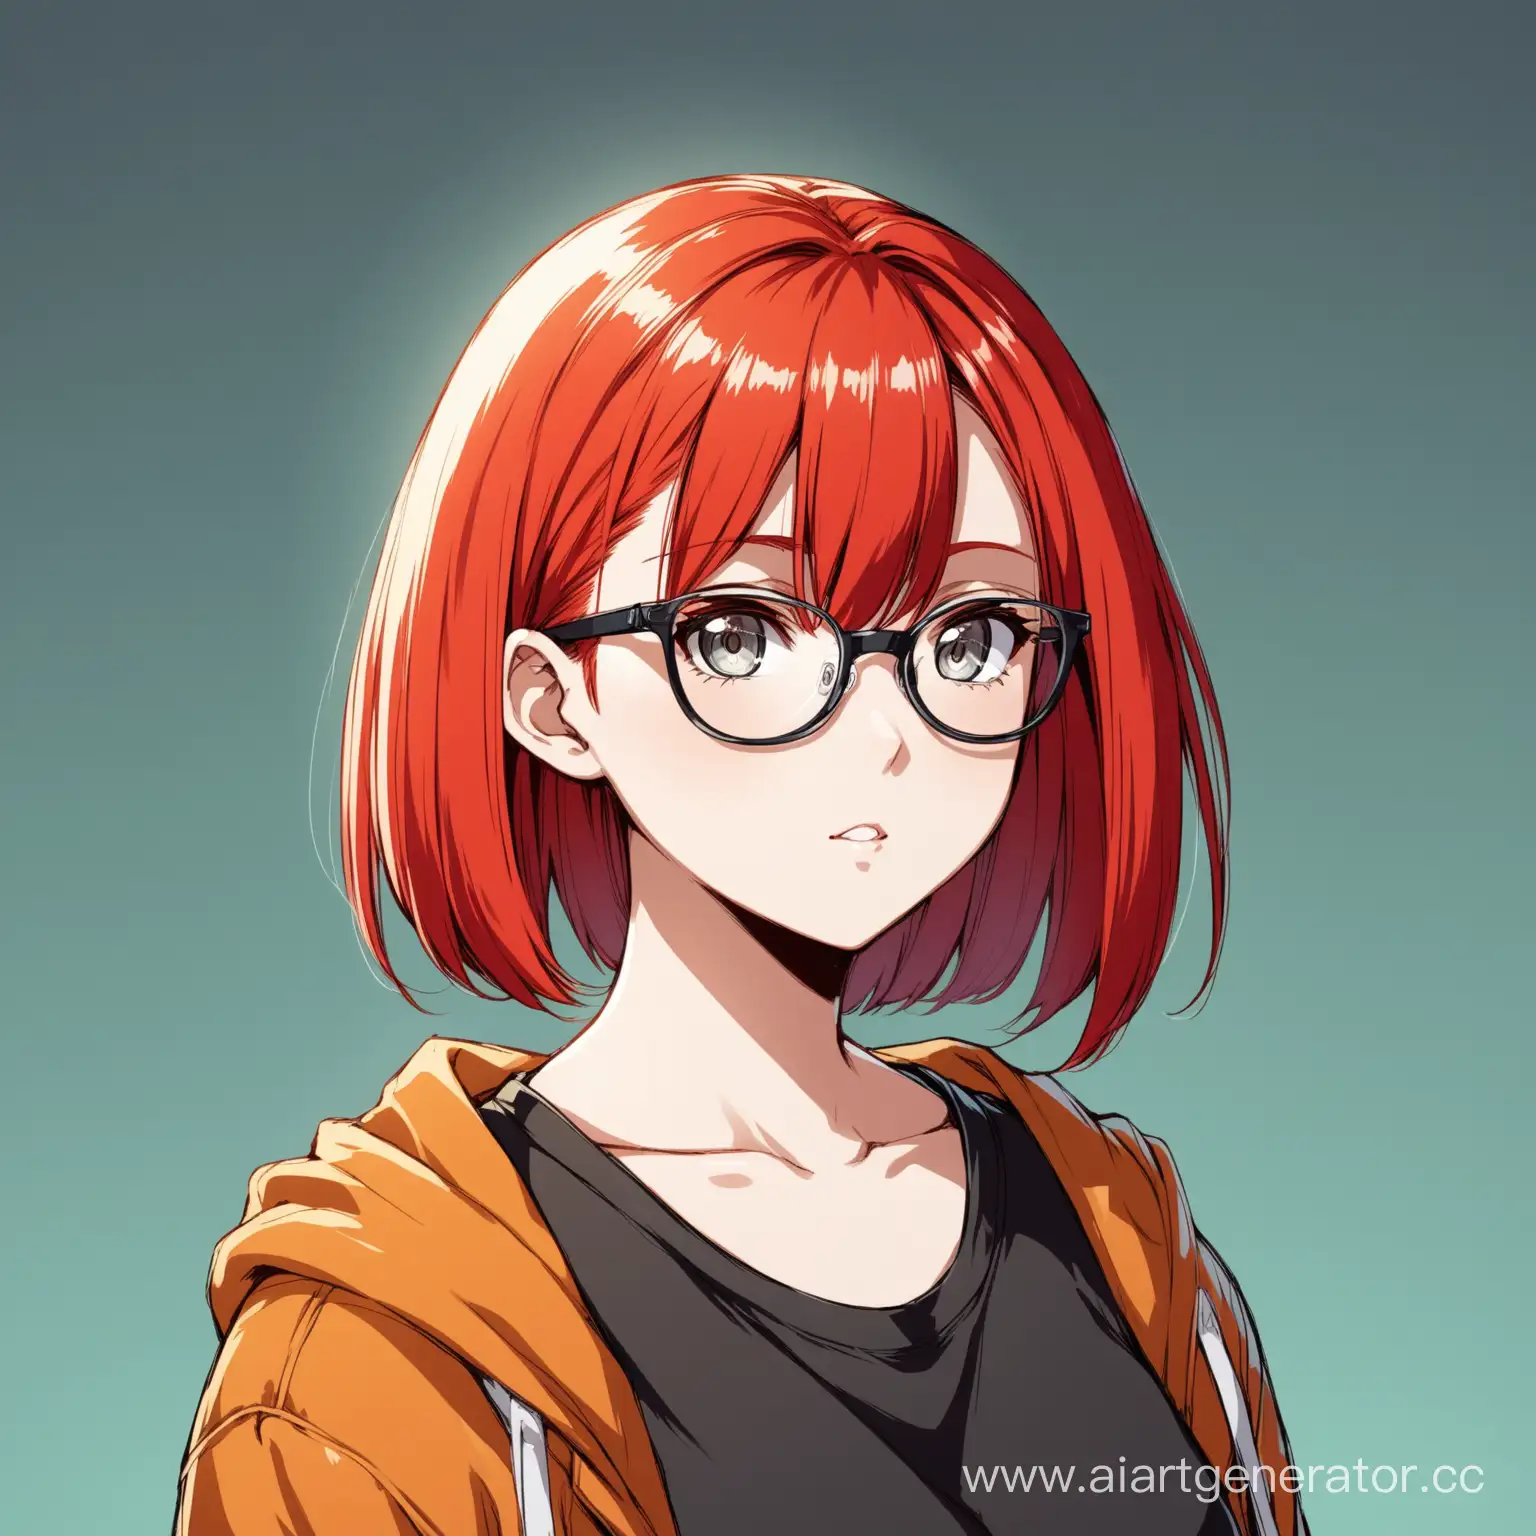 Девушка 20 лет, с короткими ярко-красными волосами и выбритыми висками, серыми глазами, в очках, в стиле аниме